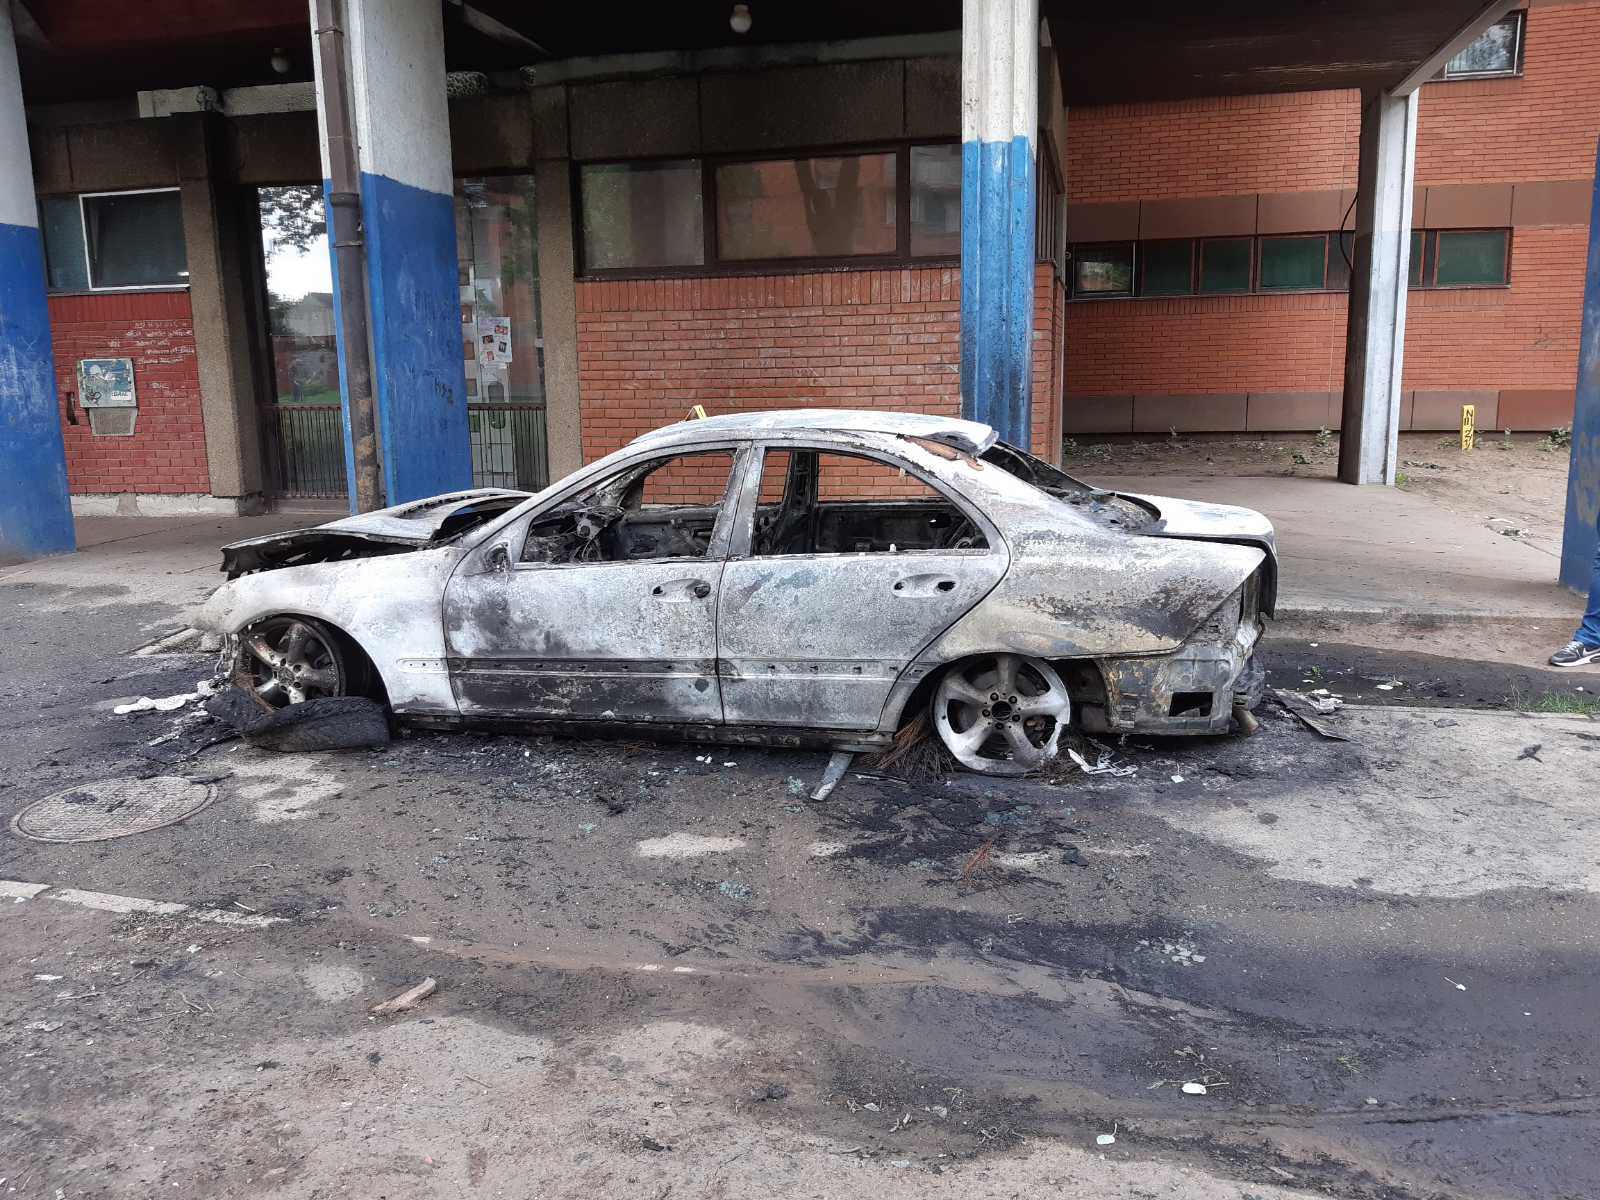 U Mikronaselju izgovoreo automobil, policijska istraga utvrdiće okolnosti pod kojim je došlo do požara